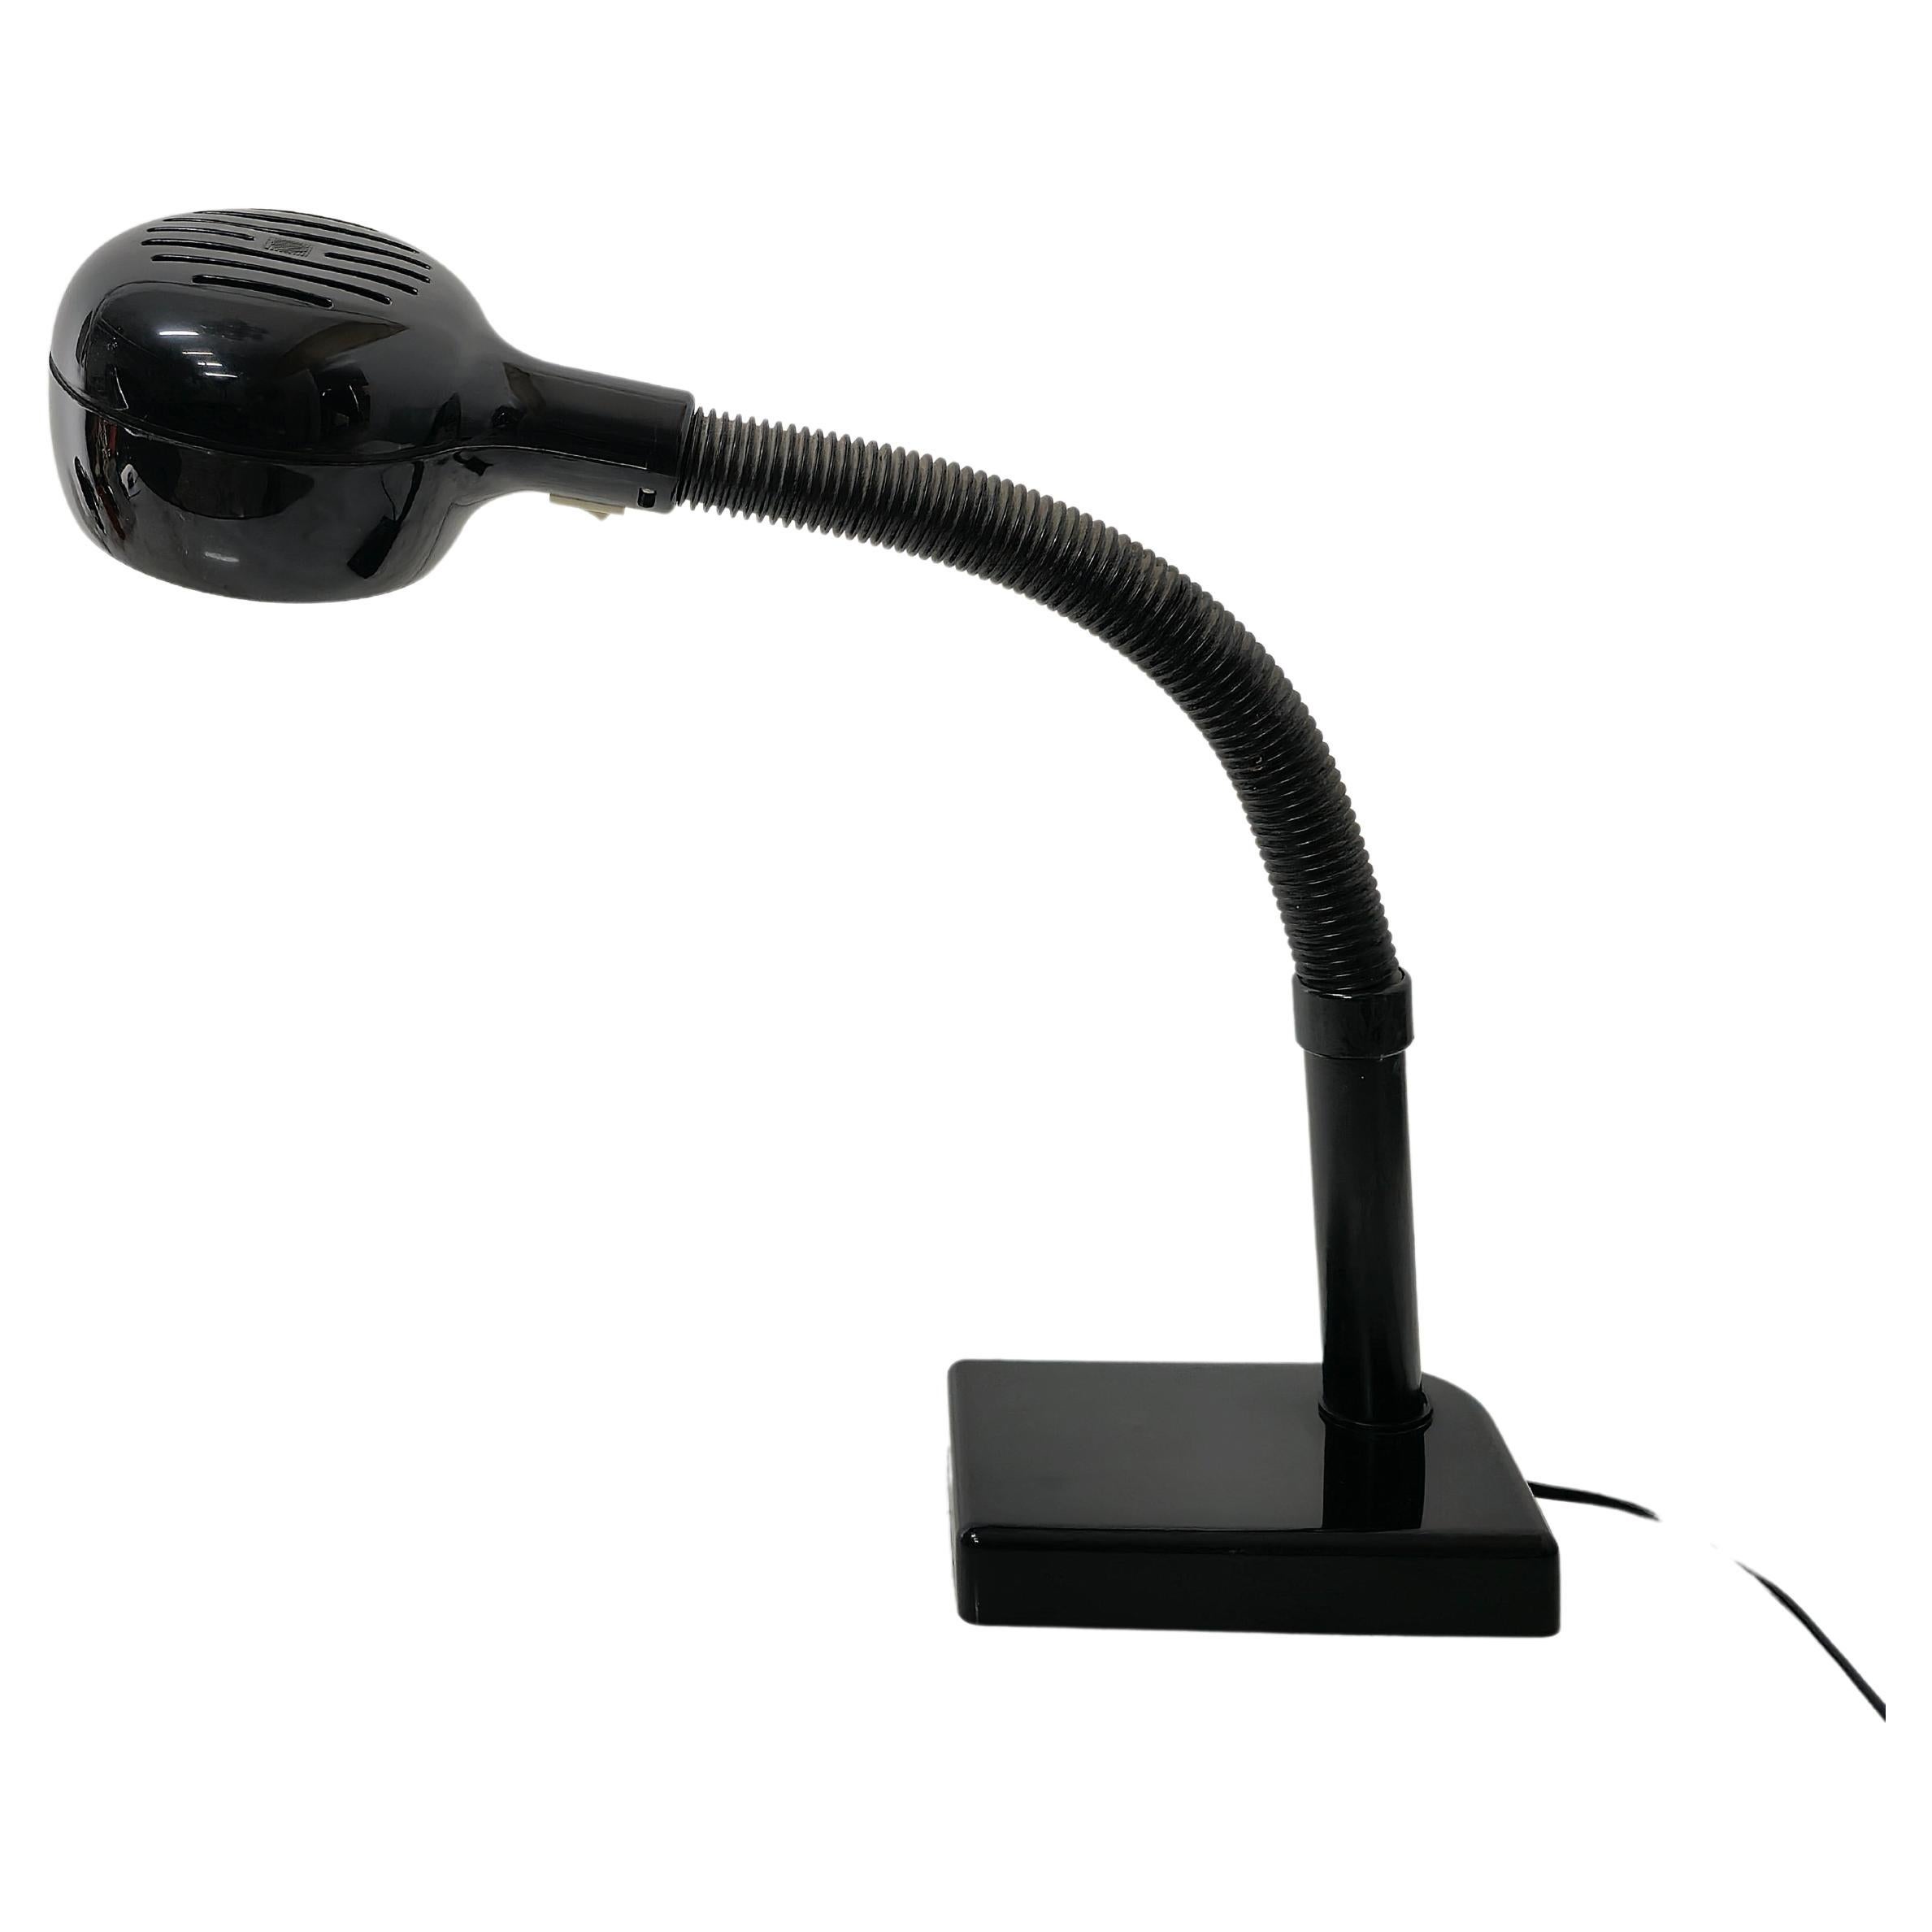 Lampe de table avec 1 lumière E27 conçue par Vico Magistretti et produite en Italie dans les années 70.
La lampe a été fabriquée en plastique noir et peut être orientée grâce à son bras flexible.



Note : Nous essayons d'offrir à nos clients un